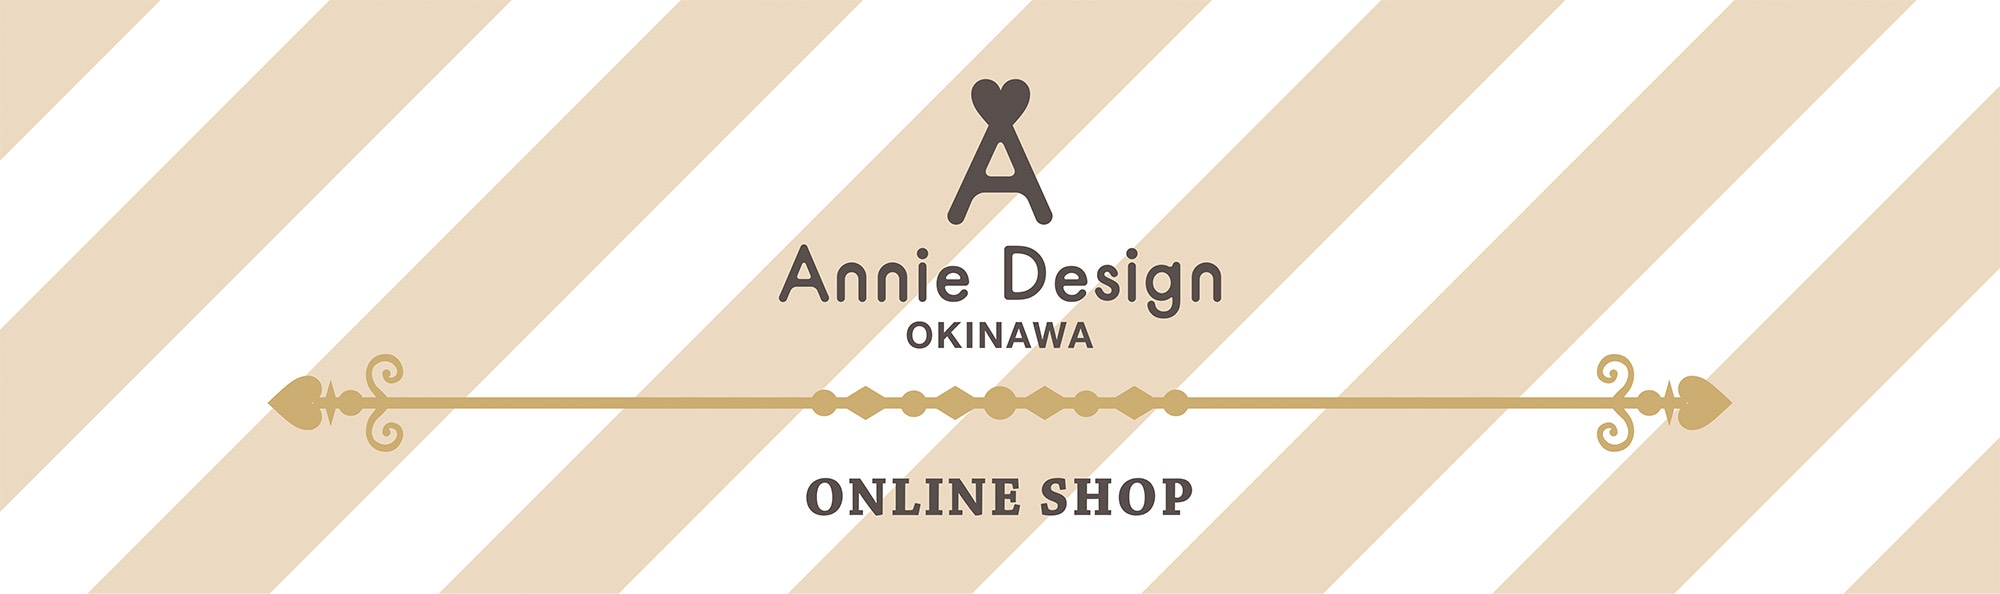 Annie Design okinawa